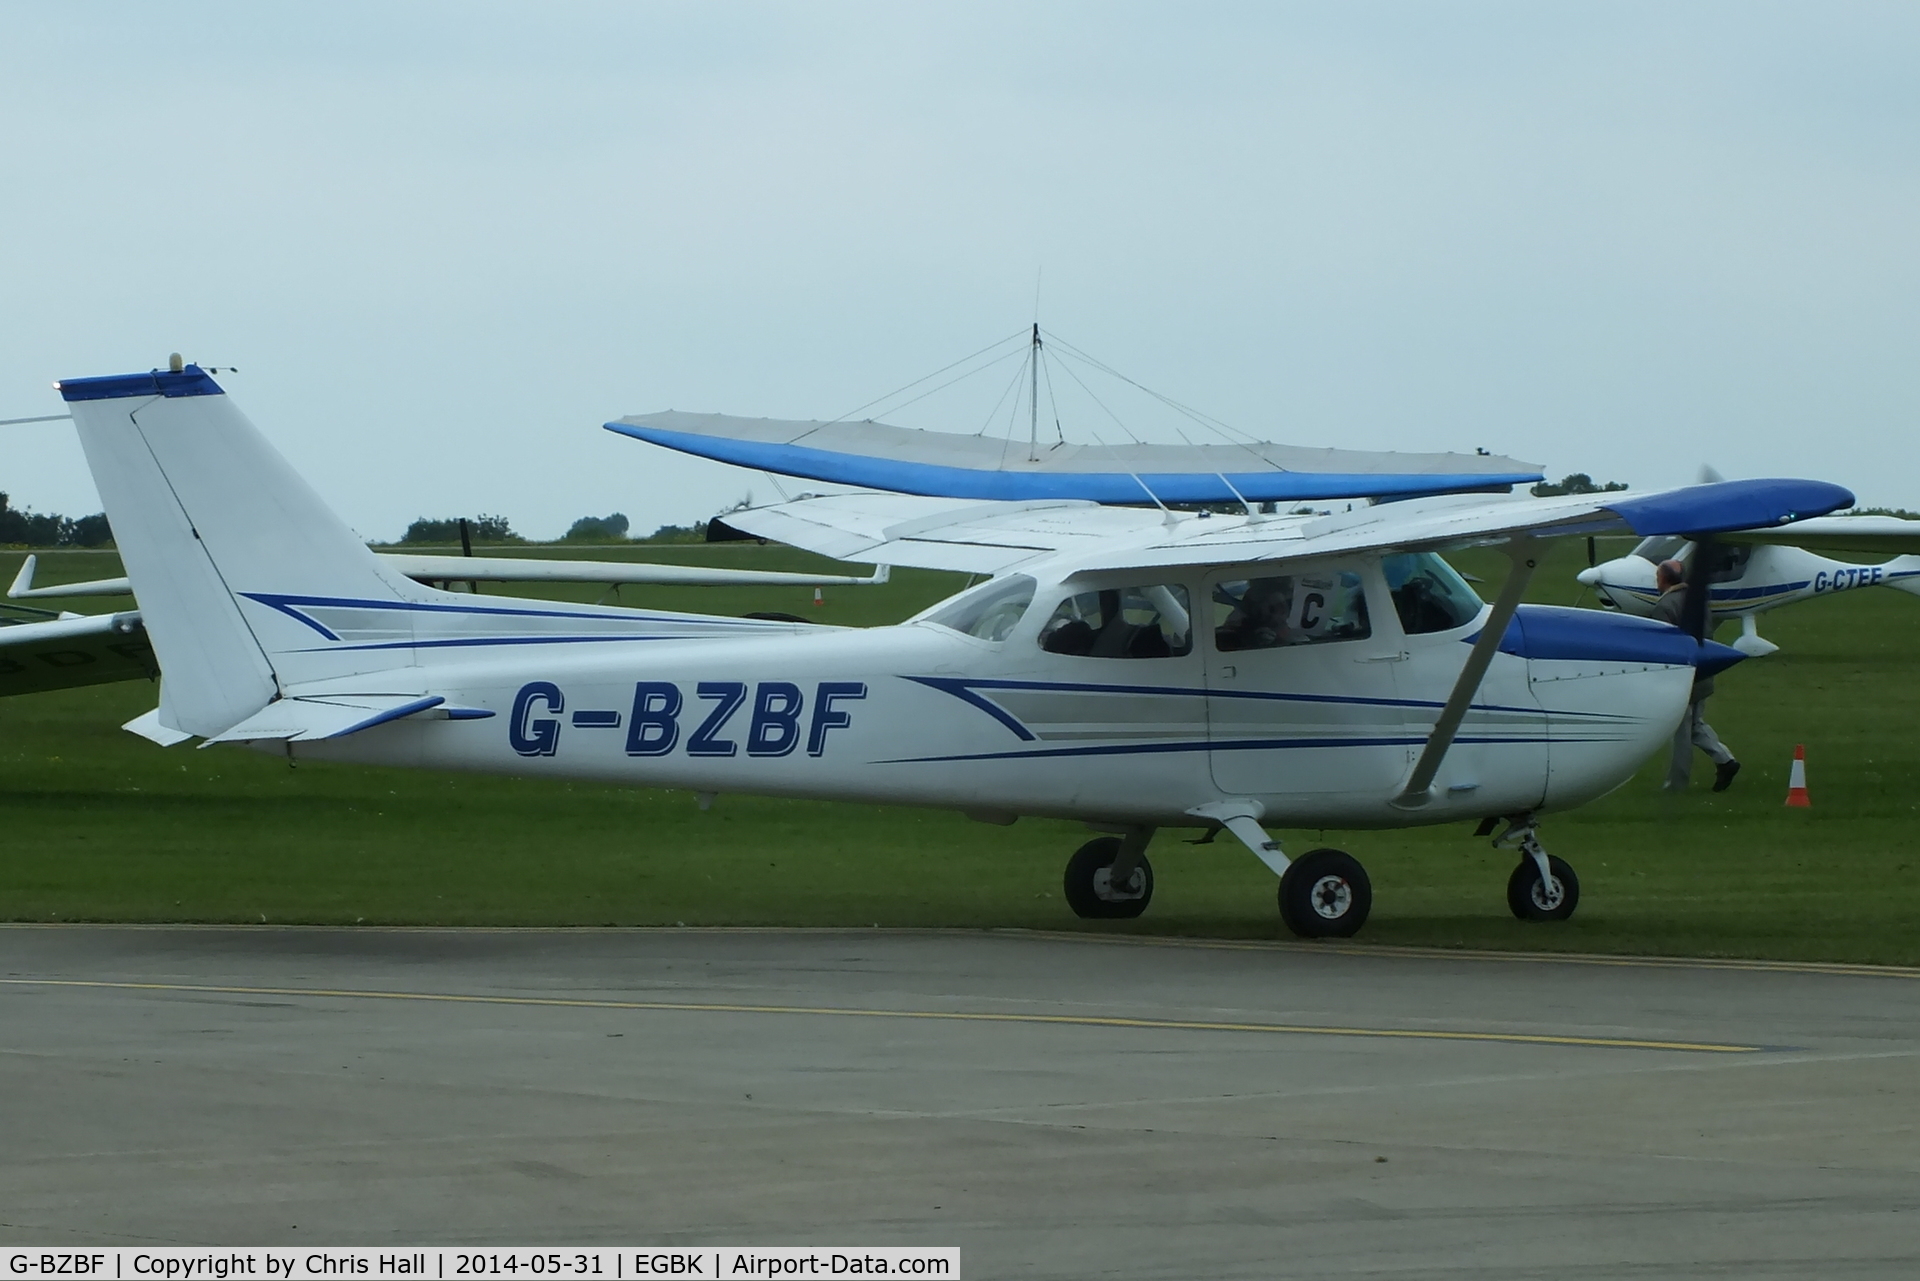 G-BZBF, 1974 Cessna 172M Skyhawk C/N 17262258, at AeroExpo 2014